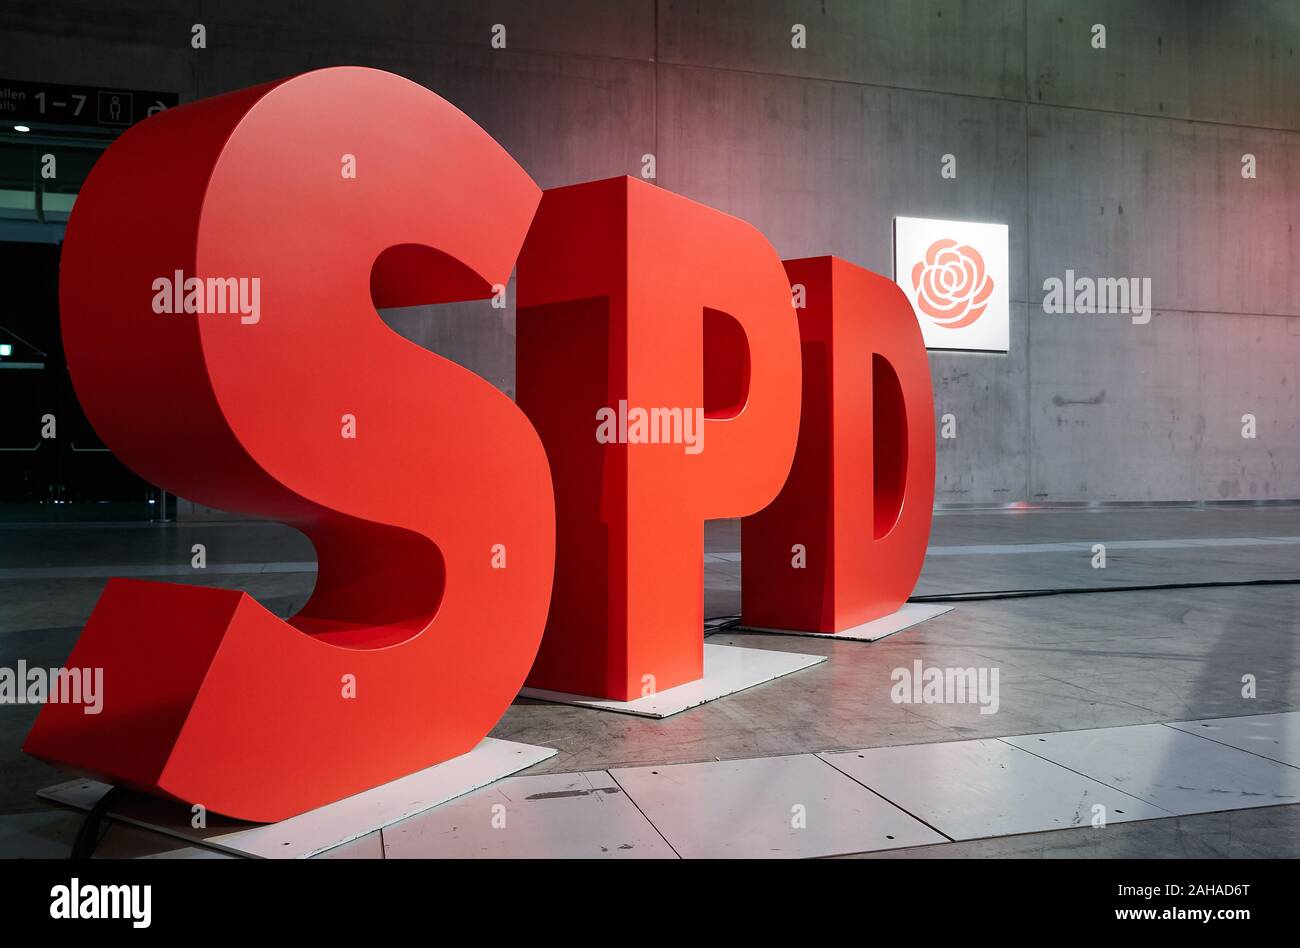 06.12.2019, Berlin, Berlin, Deutschland - Das Logo der Sozialdemokratischen Partei Deutschlands SPD als Person große dreidimensionale Buchstaben. Für die federa Stockfoto